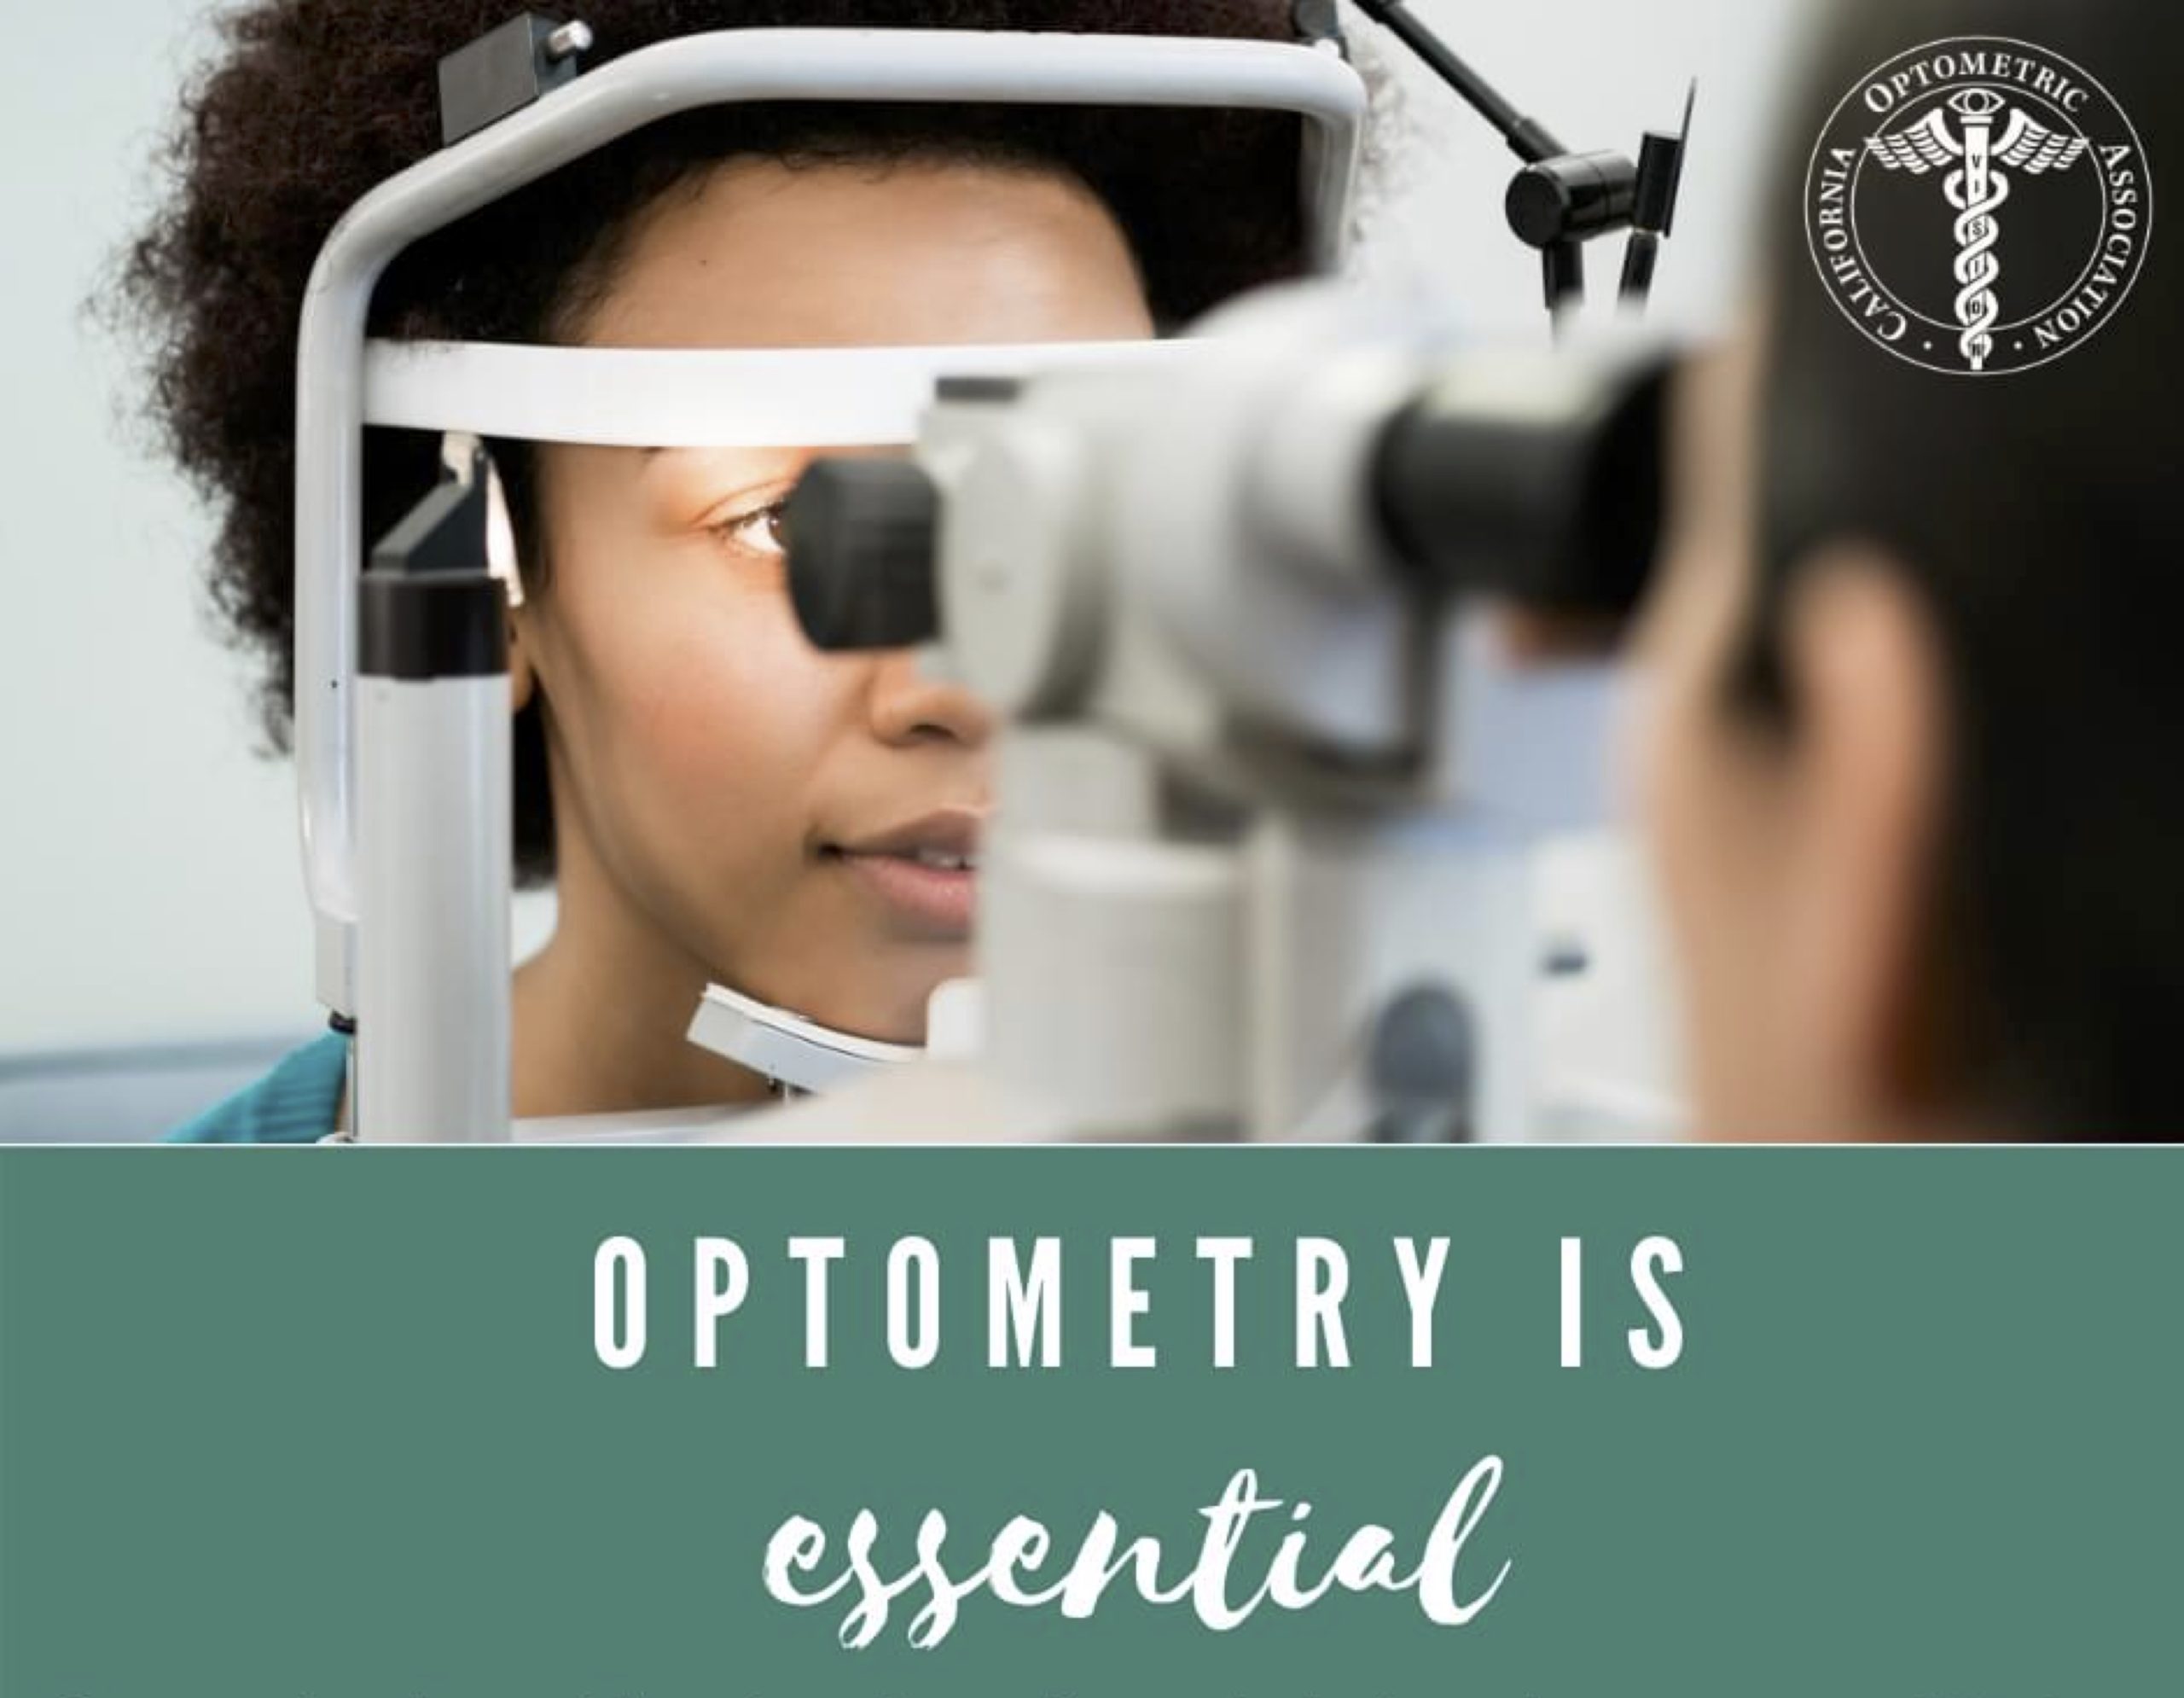 Optometry is essential